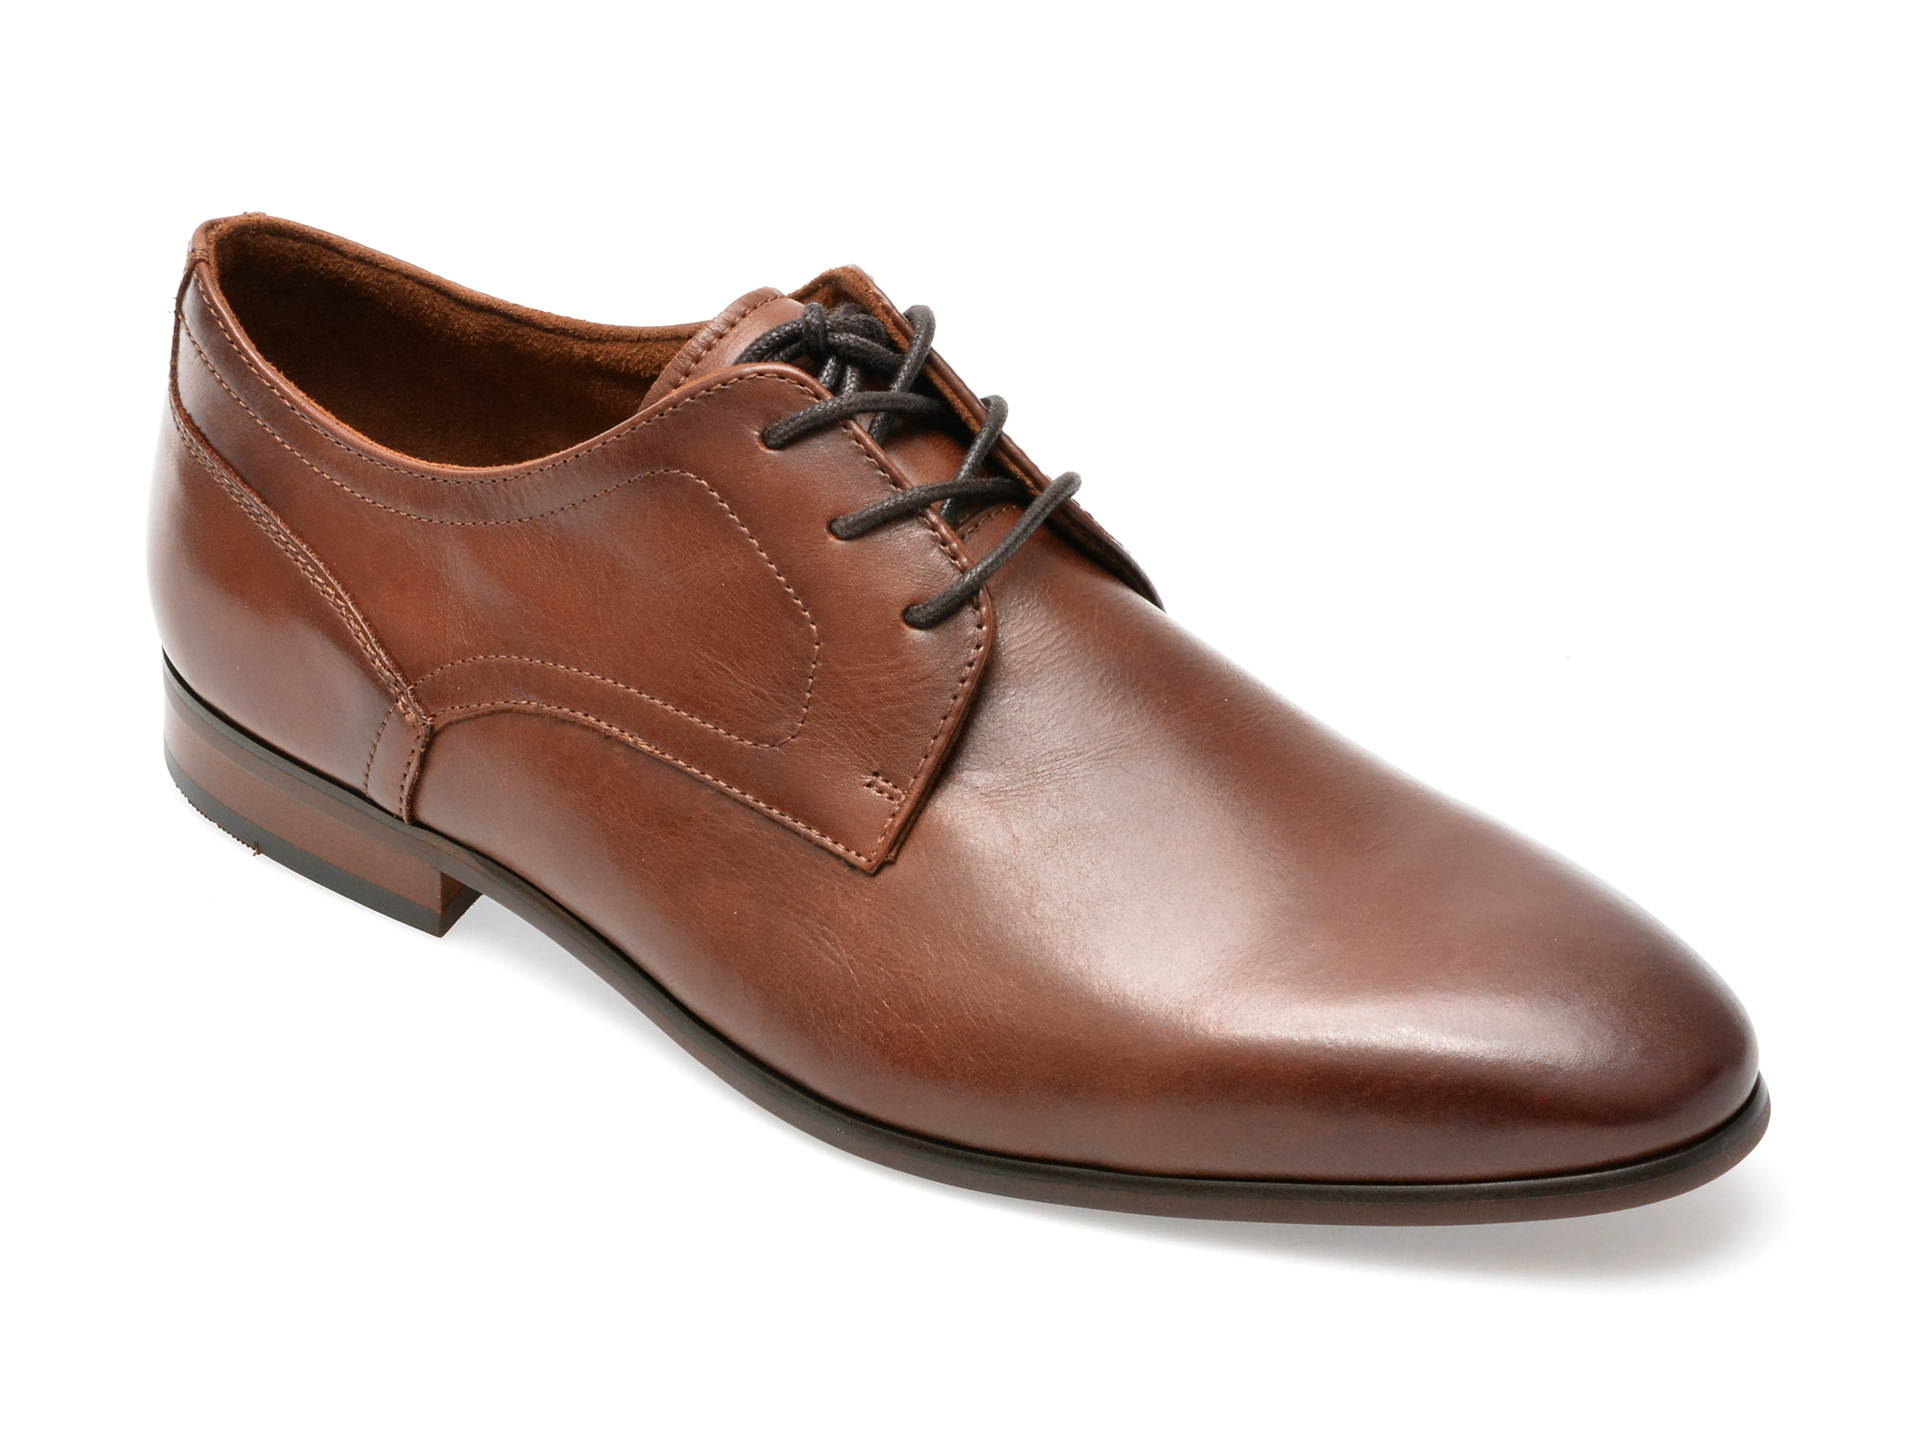 Pantofi ALDO maro, DELFORDFLEX230, din piele naturala /barbati/pantofi